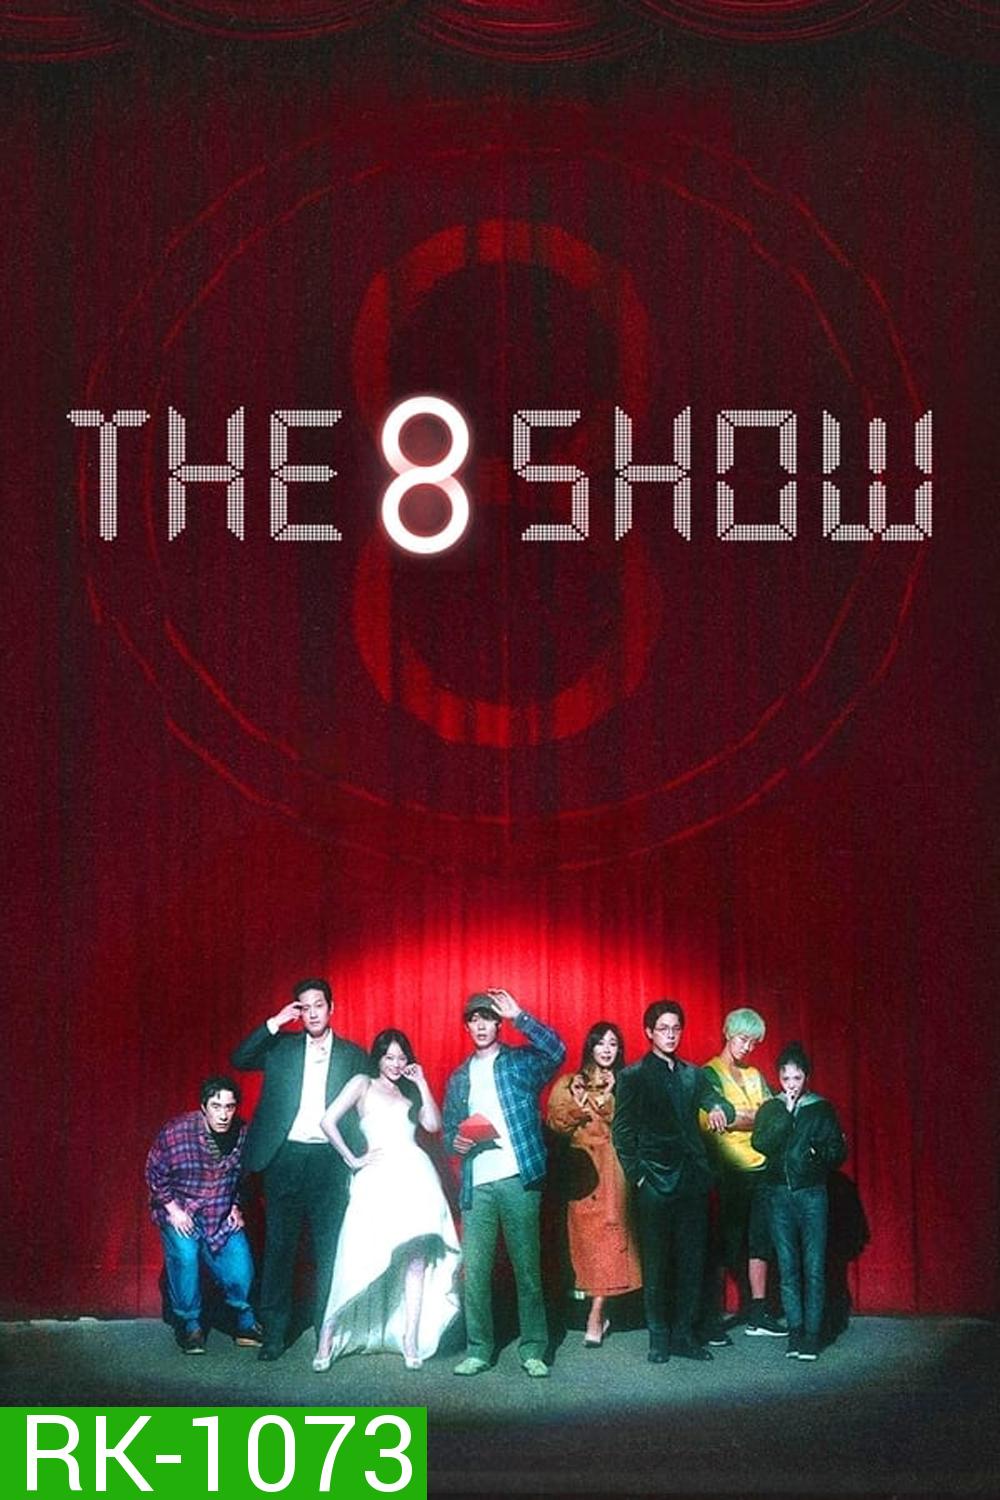 The 8 Show เกมโชว์เลือดแลกเงิน (2024)